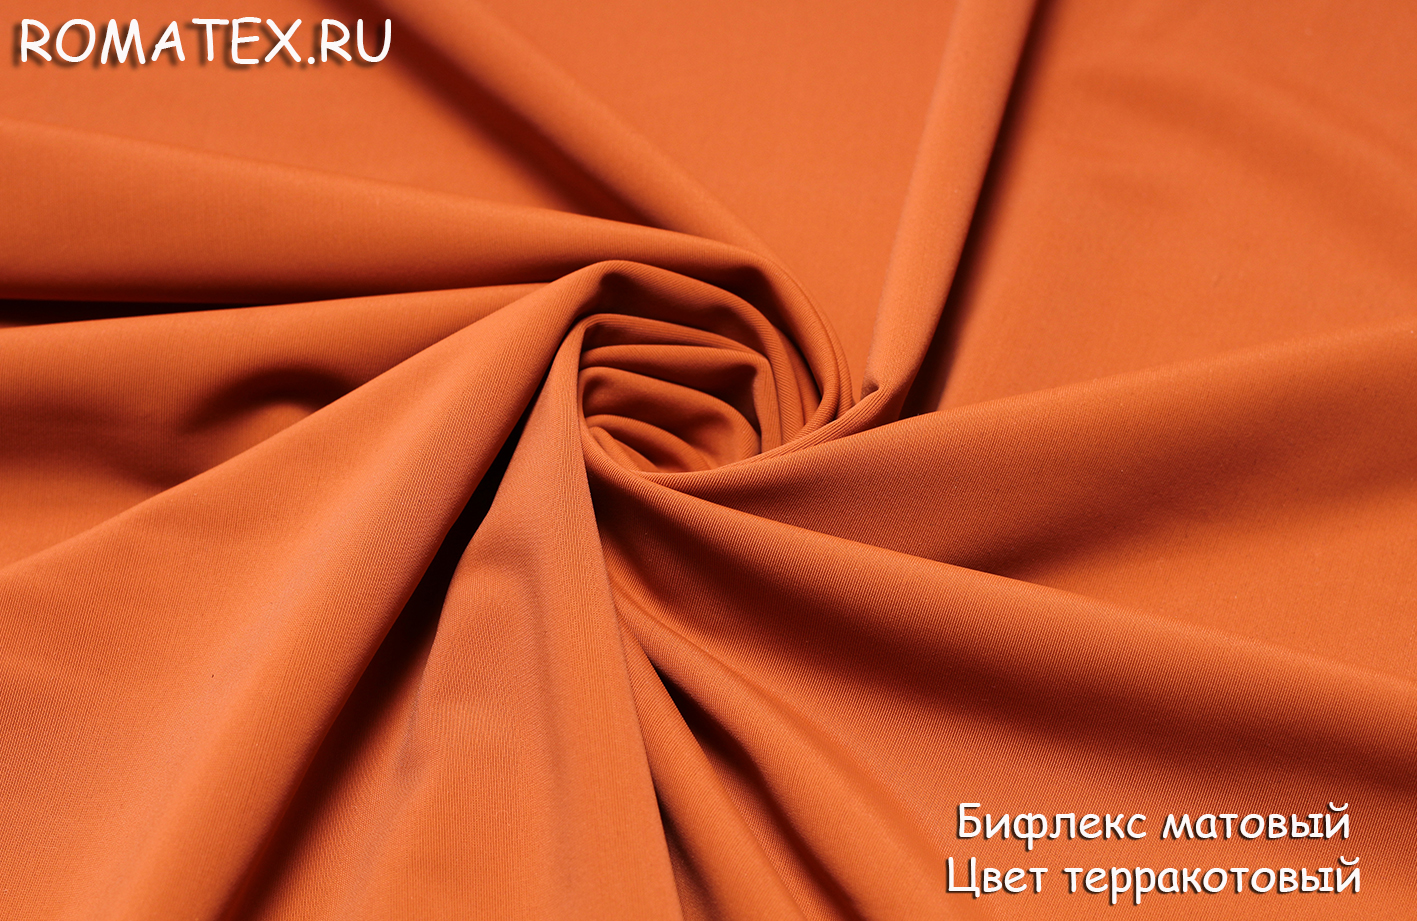 Ткань Ткань Бифлекс матовый цвет терракотовый - купить в магазине Роматекс